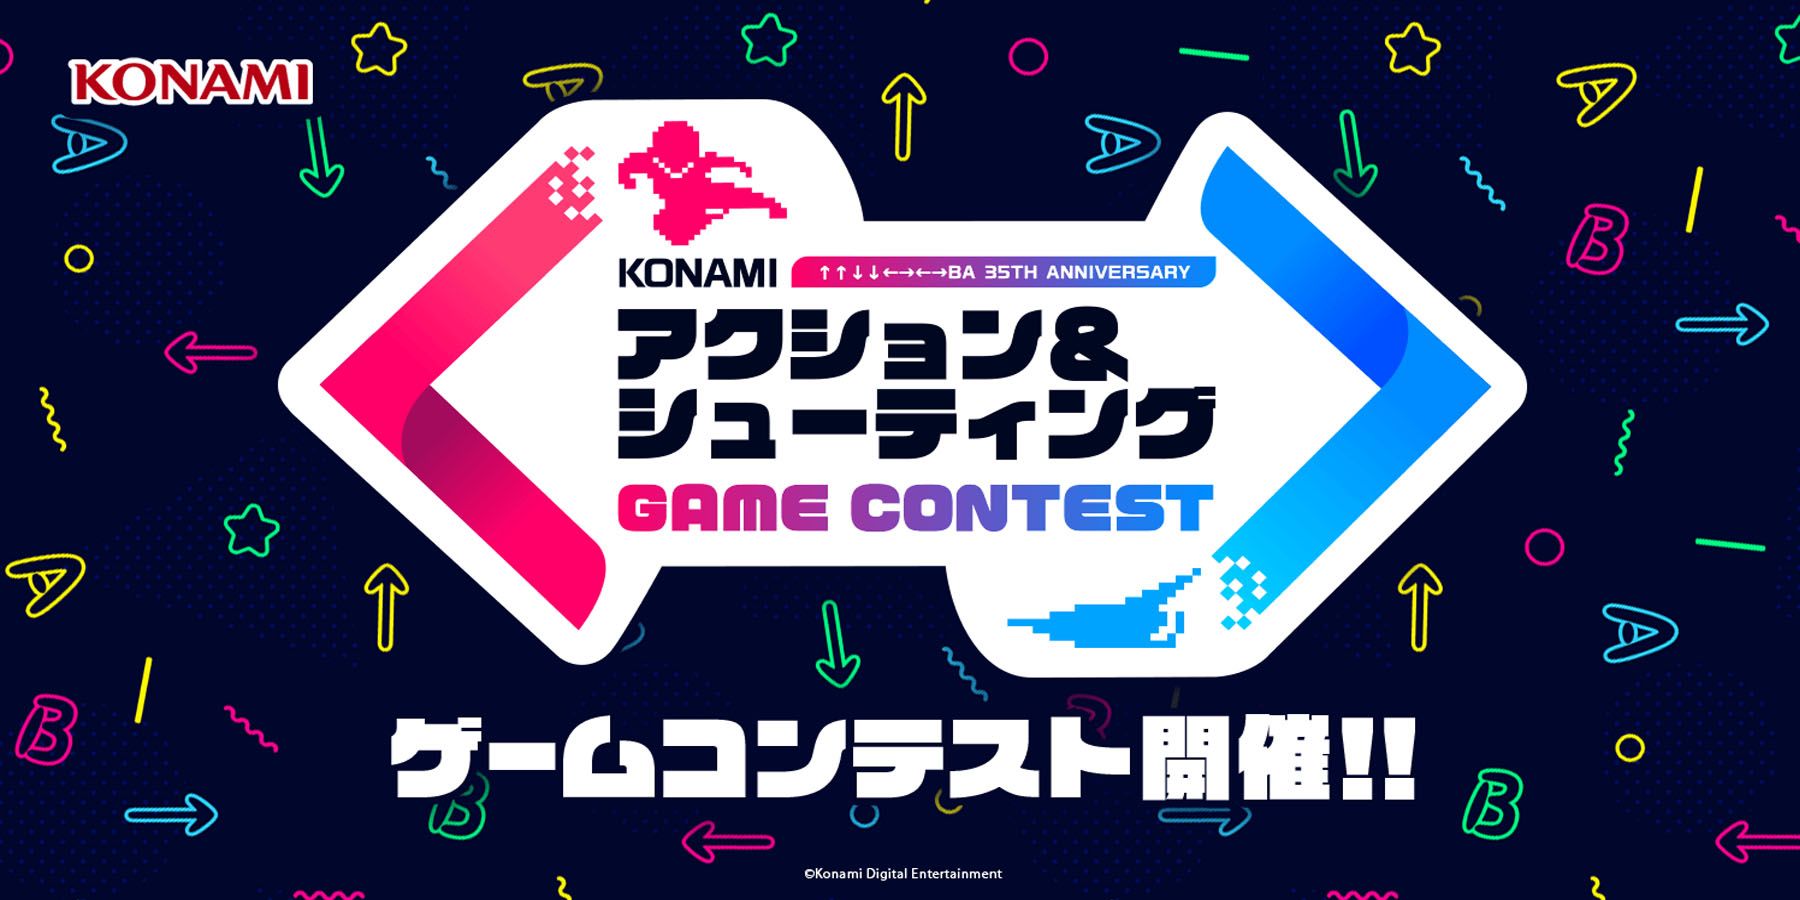 Konami bjuder indieutvecklare att göra spel baserade på klassiska franchiseavtal